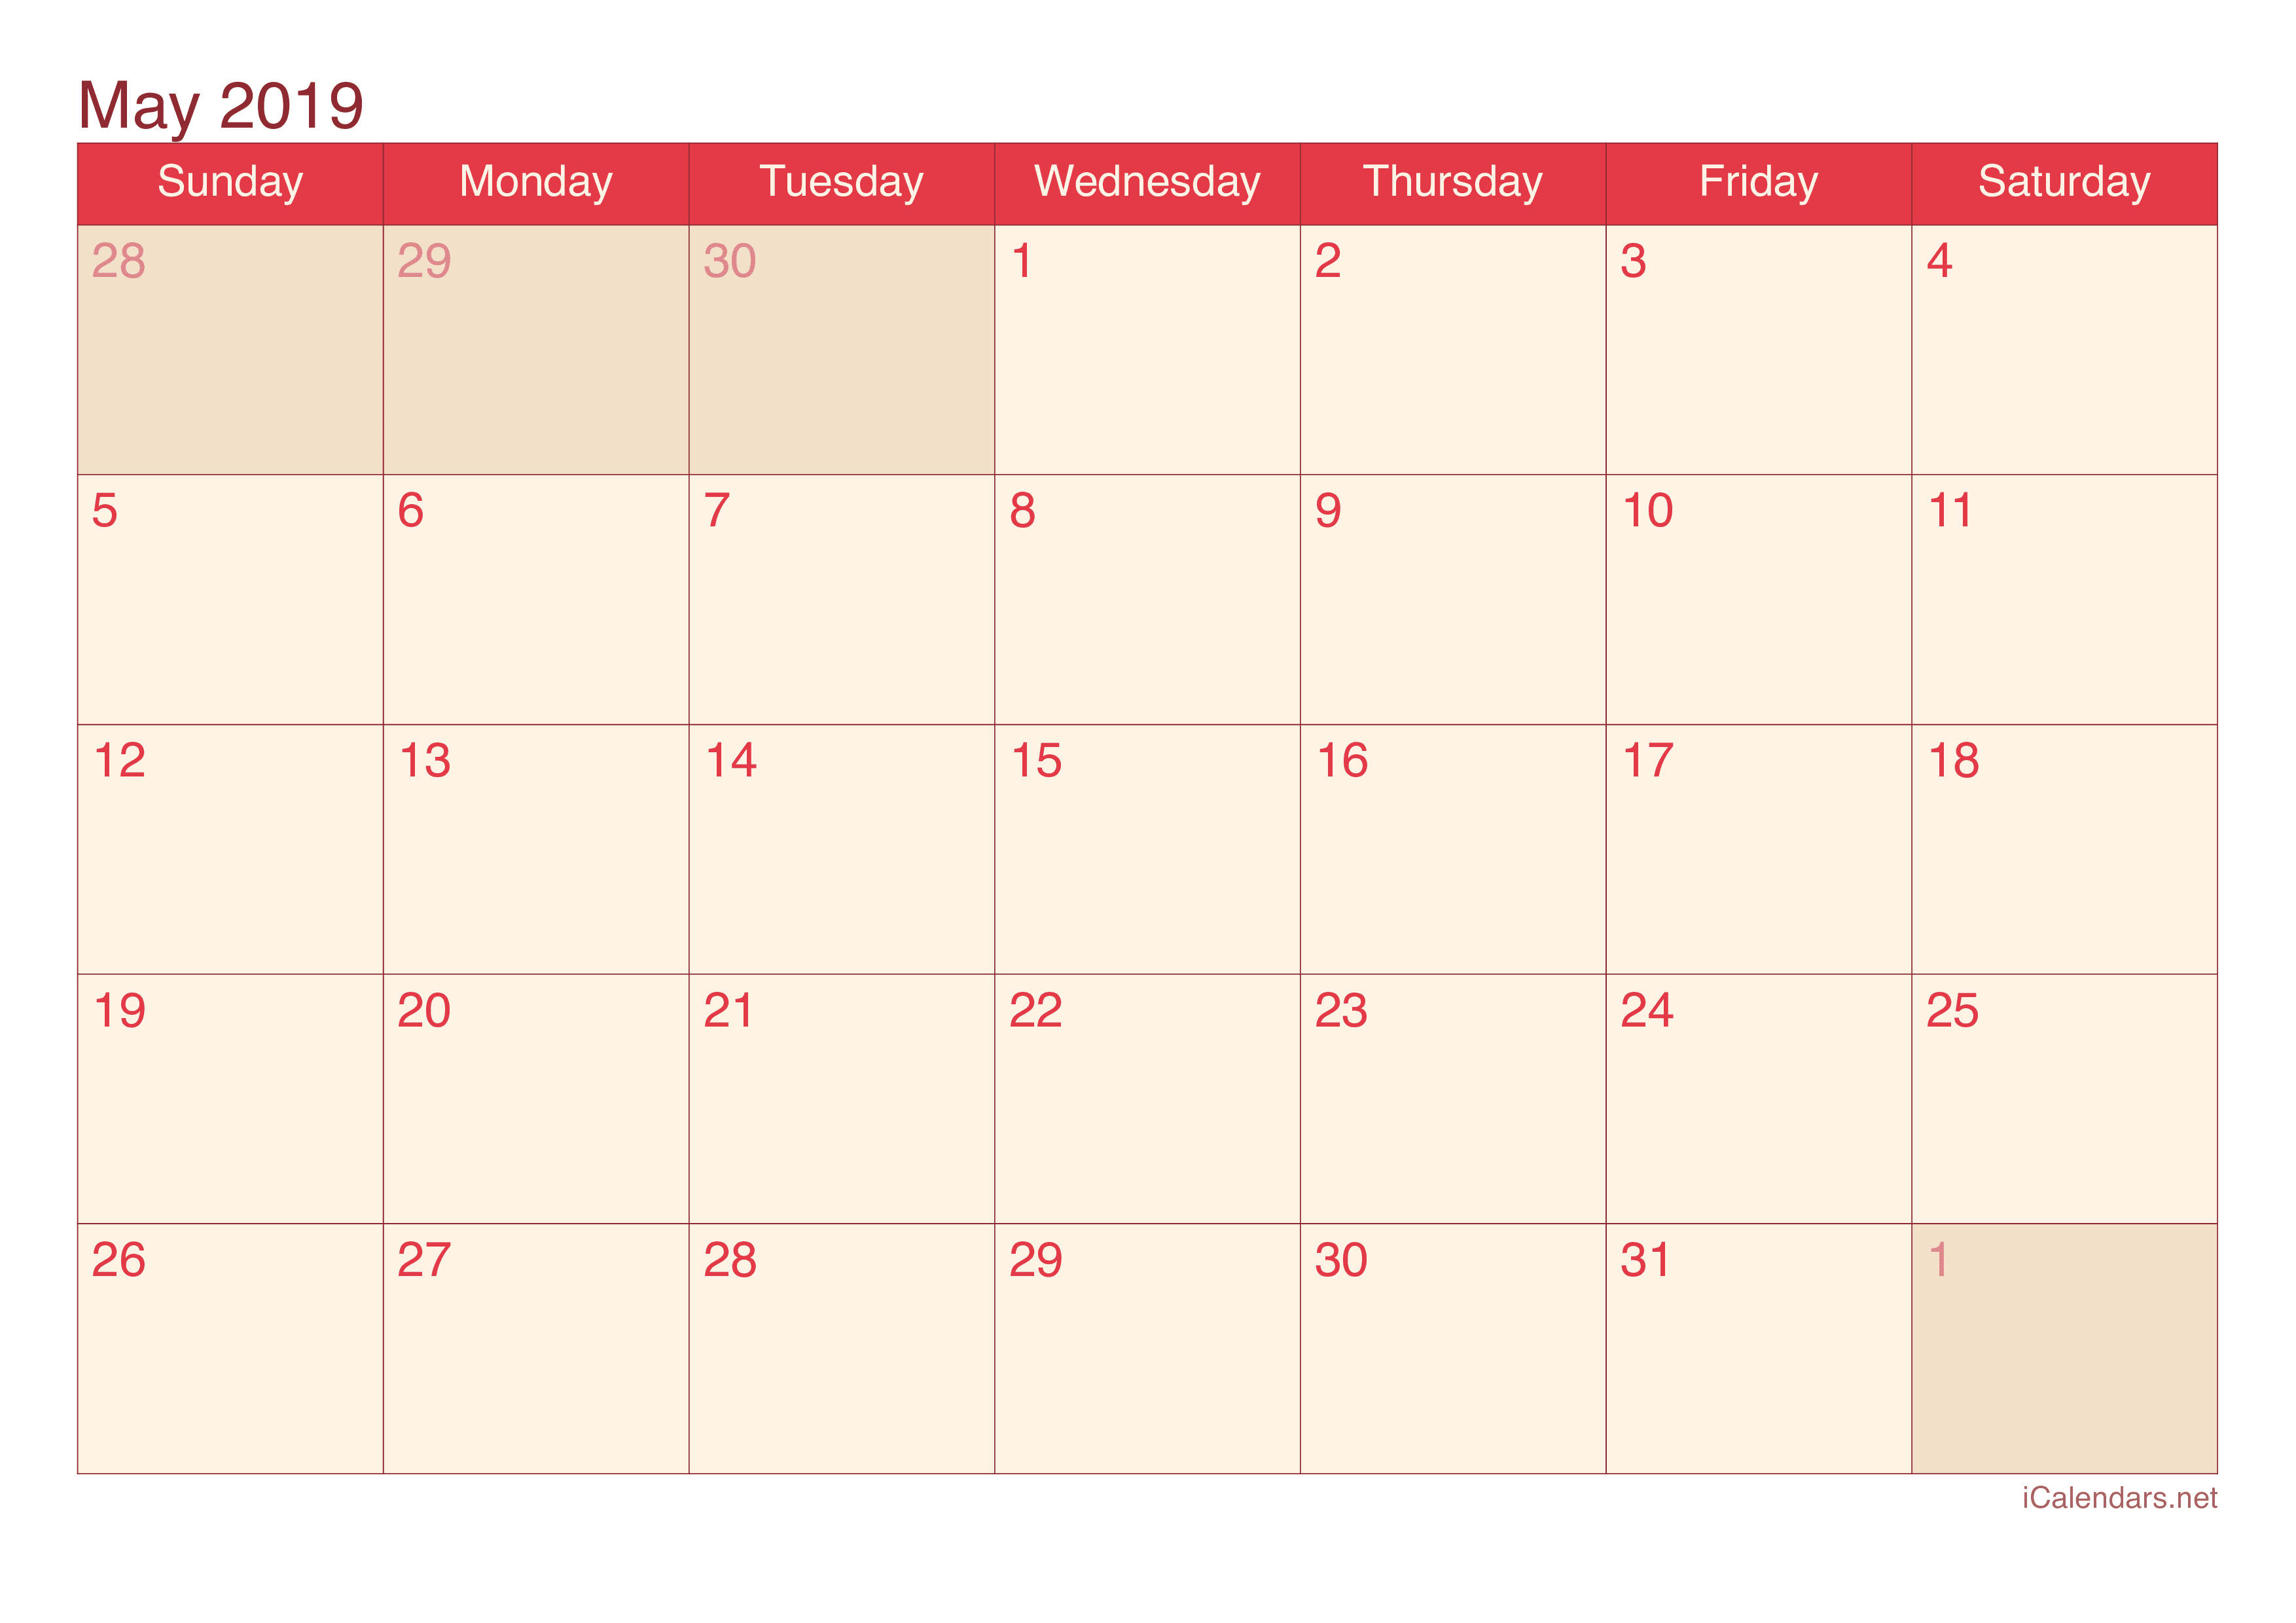 may-2019-calendar